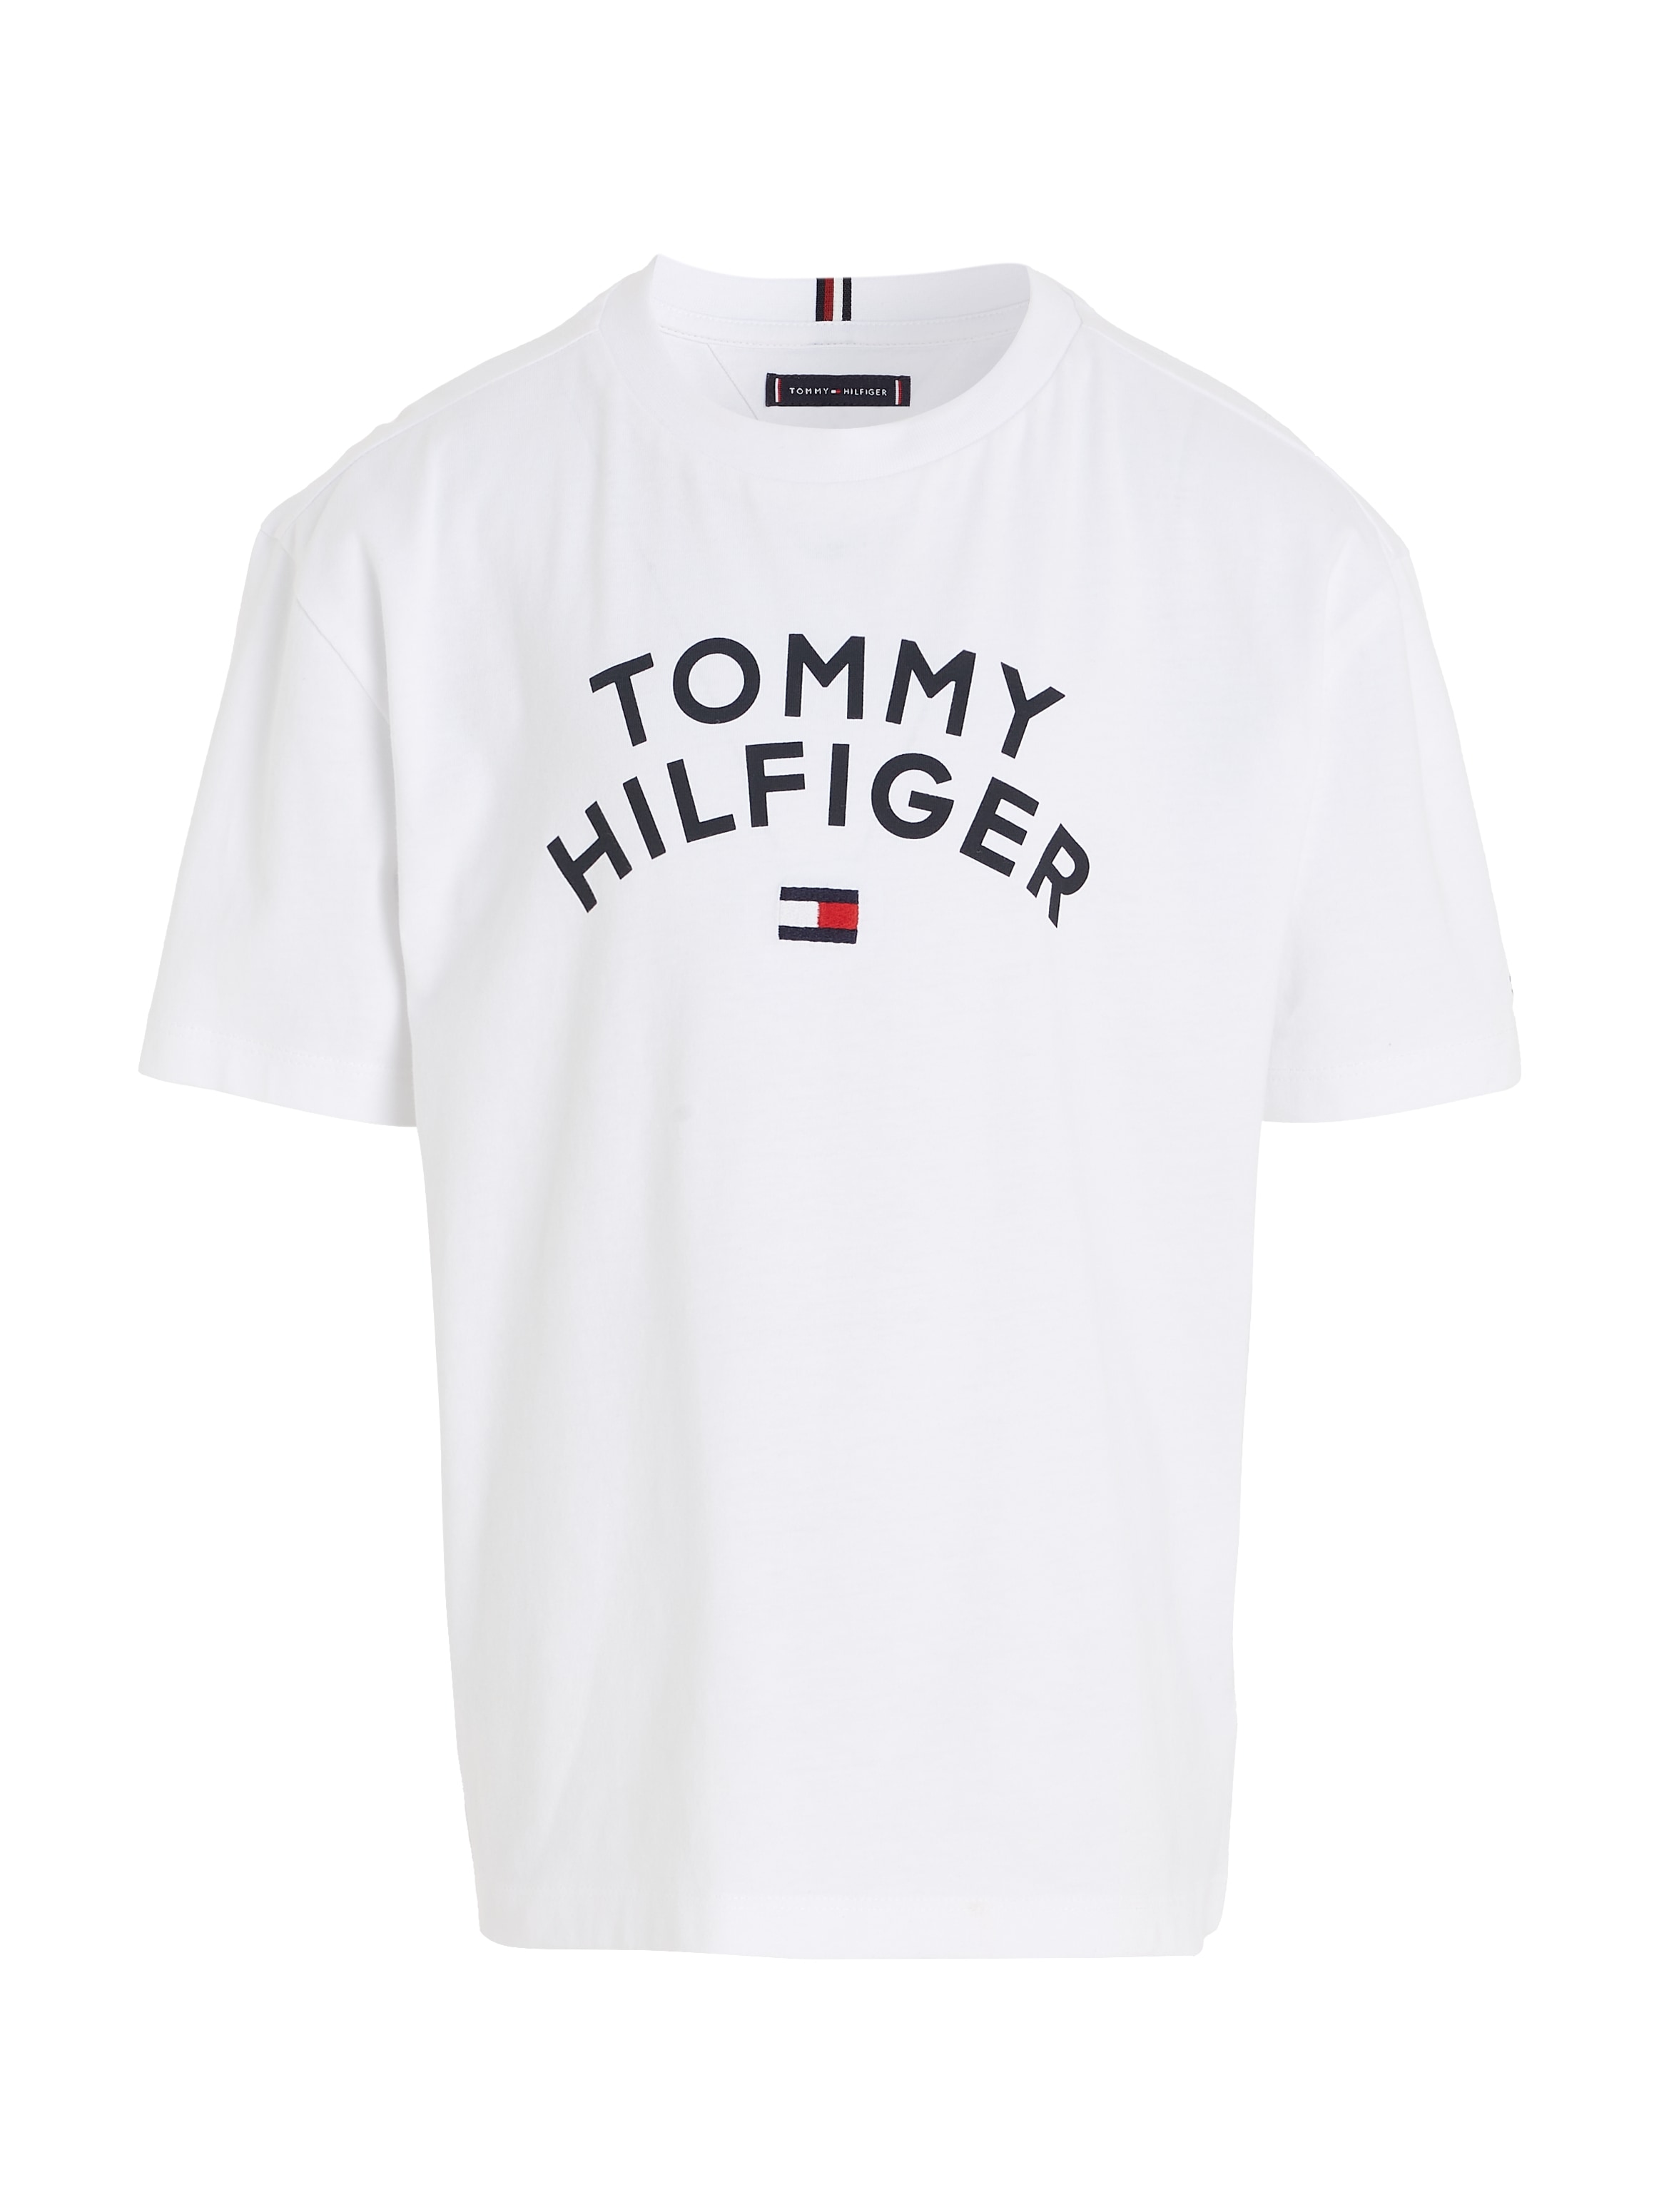 »TOMMY T-Shirt - Trendige TEE« versandkostenfrei ohne Hilfiger shoppen Tommy HILFIGER Mindestbestellwert FLAG